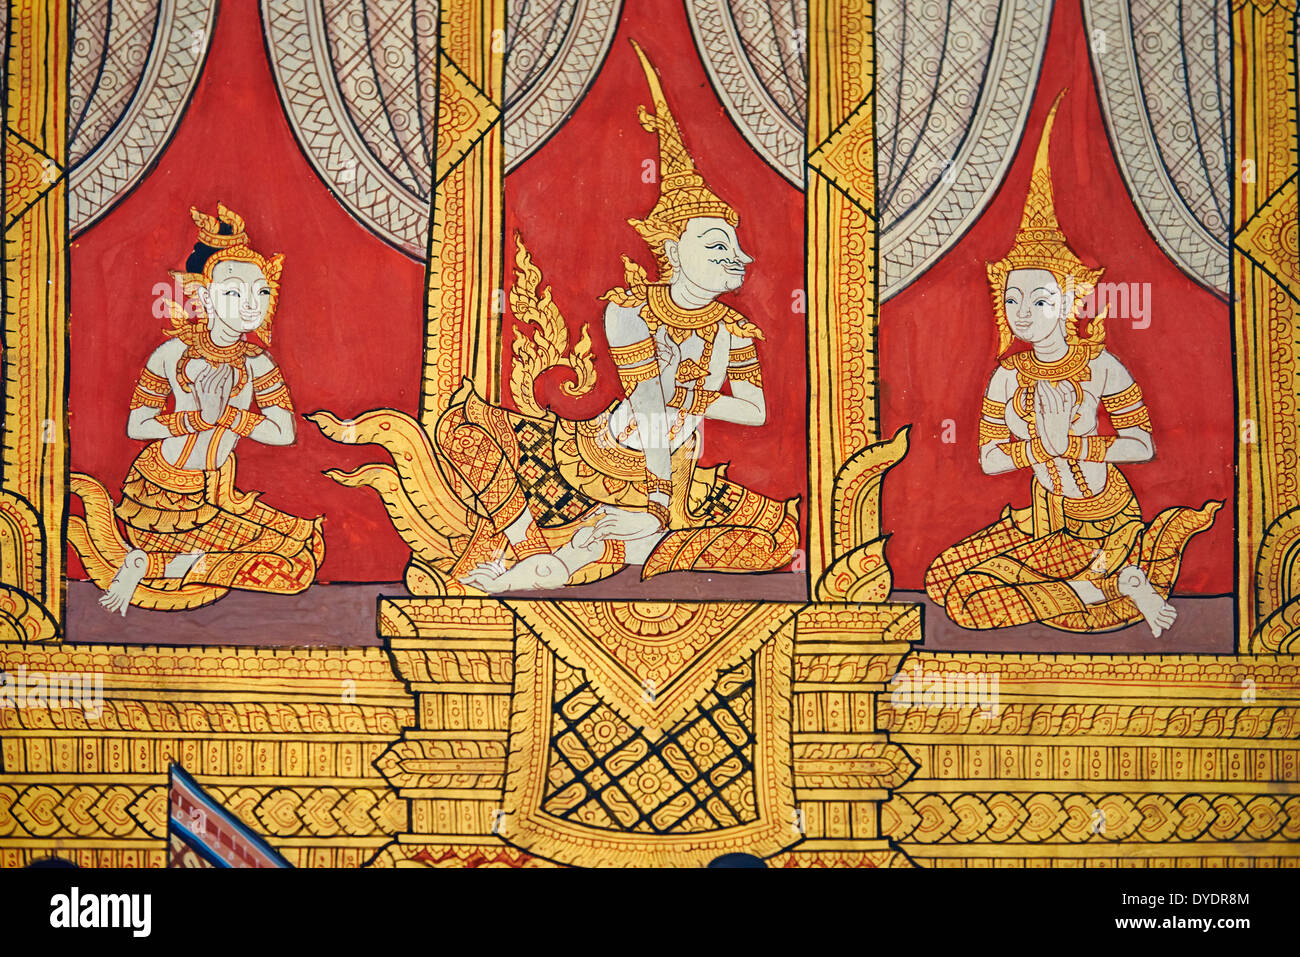 Thaïlande, Bangkok, Wat Pho, temple du Bouddha de couchage, peinture murale Banque D'Images